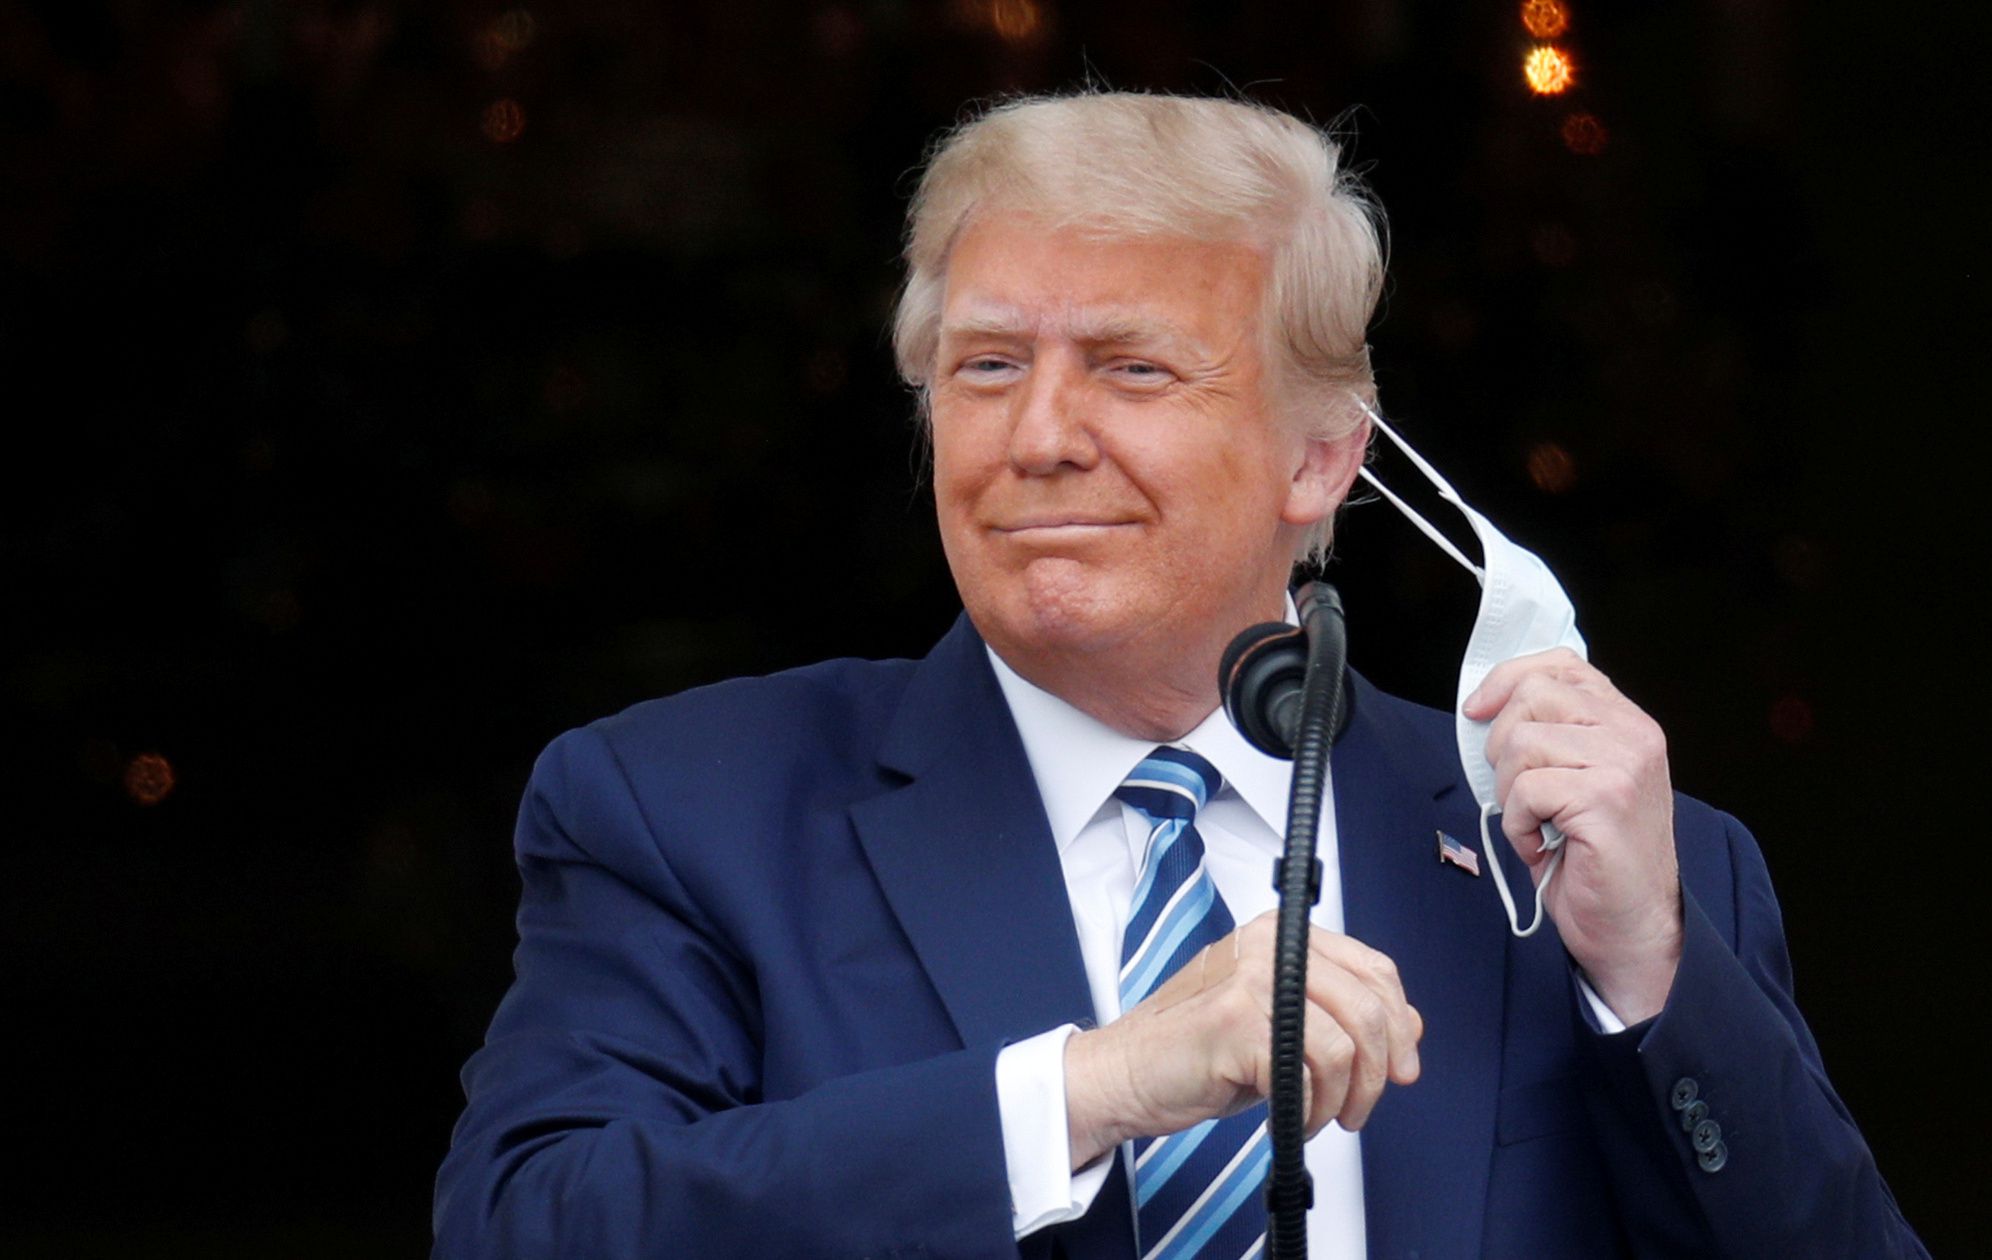 El presidente Donald Trump se ha resistido al uso de mascarilla hasta las últimas semanas. REUTERS/Tom Brenner     TPX IMAGES OF THE DAY